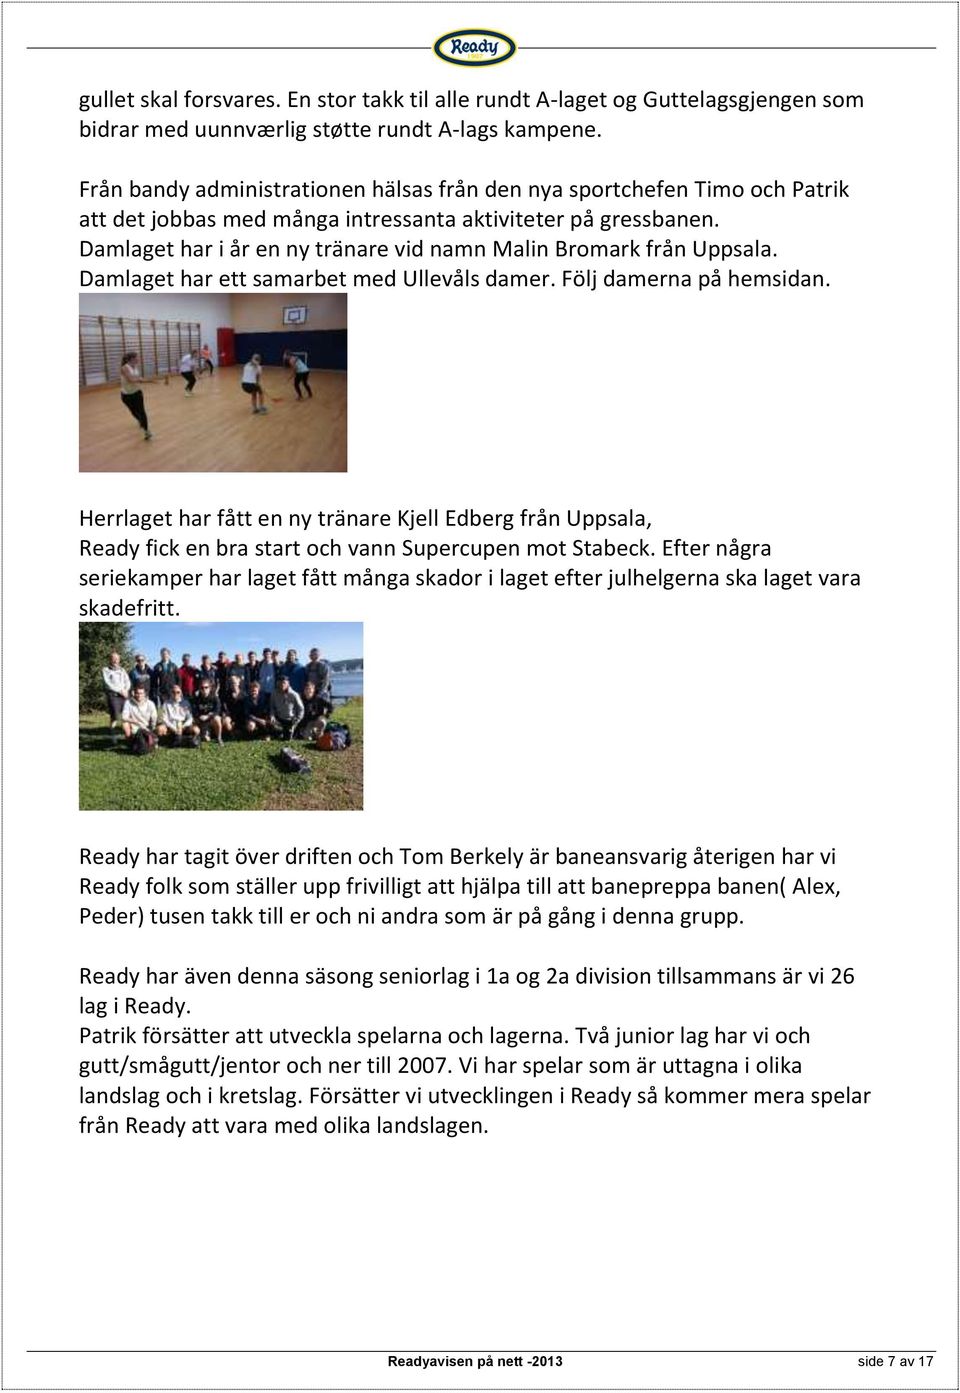 Damlaget har i år en ny tränare vid namn Malin Bromark från Uppsala. Damlaget har ett samarbet med Ullevåls damer. Följ damerna på hemsidan.